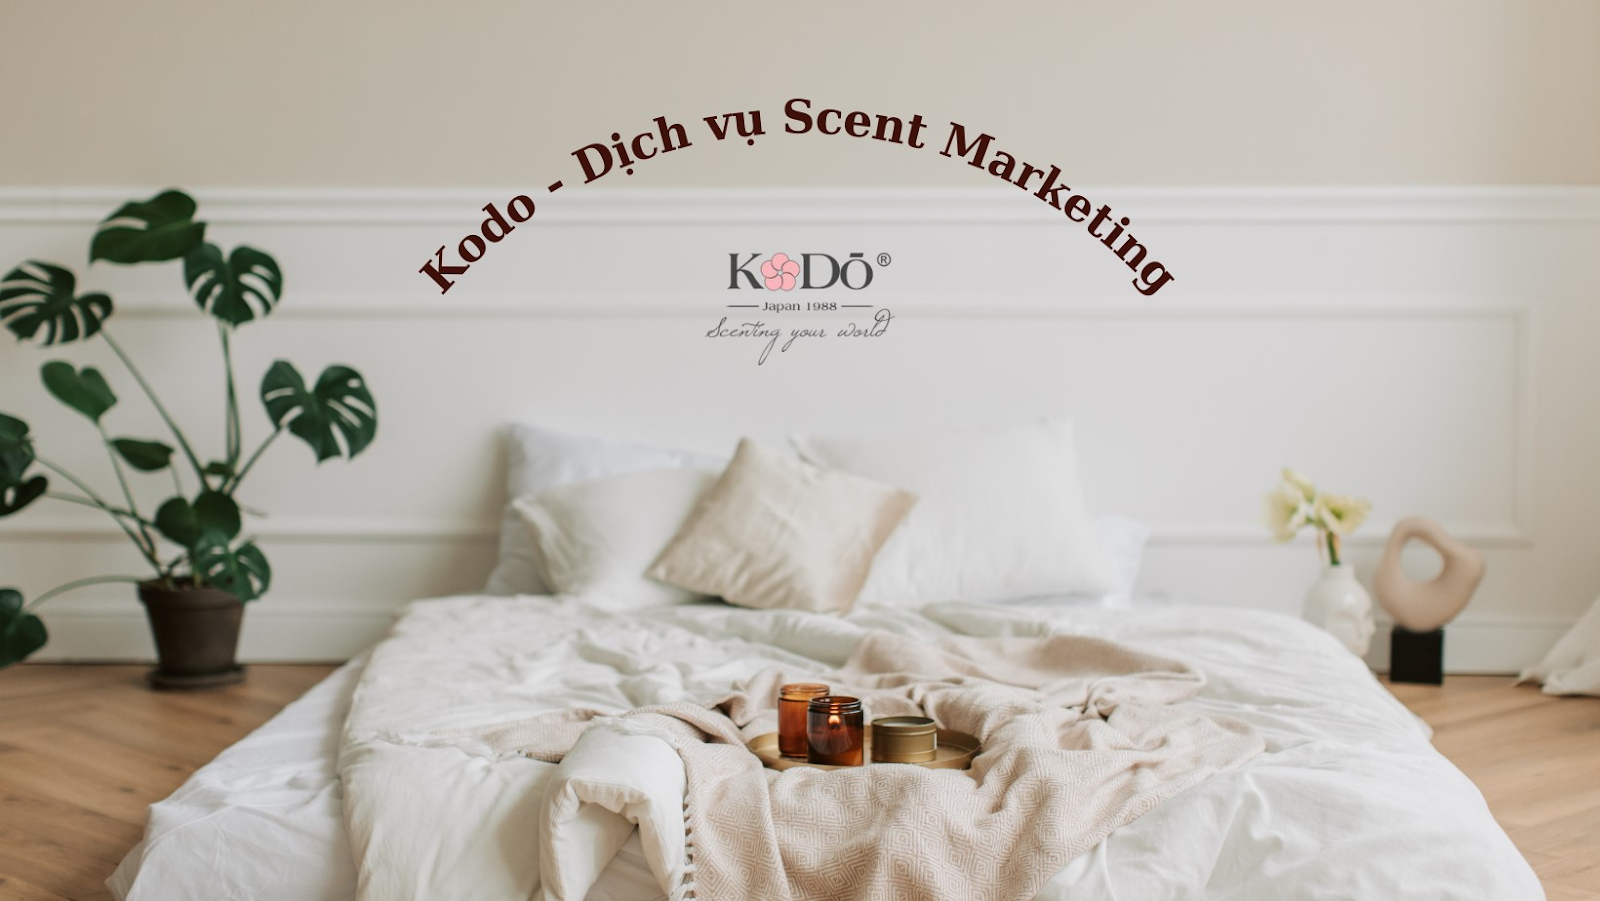 kodo-dich-vu-scent-marketing-tinh-te-va-hieu-qua-1